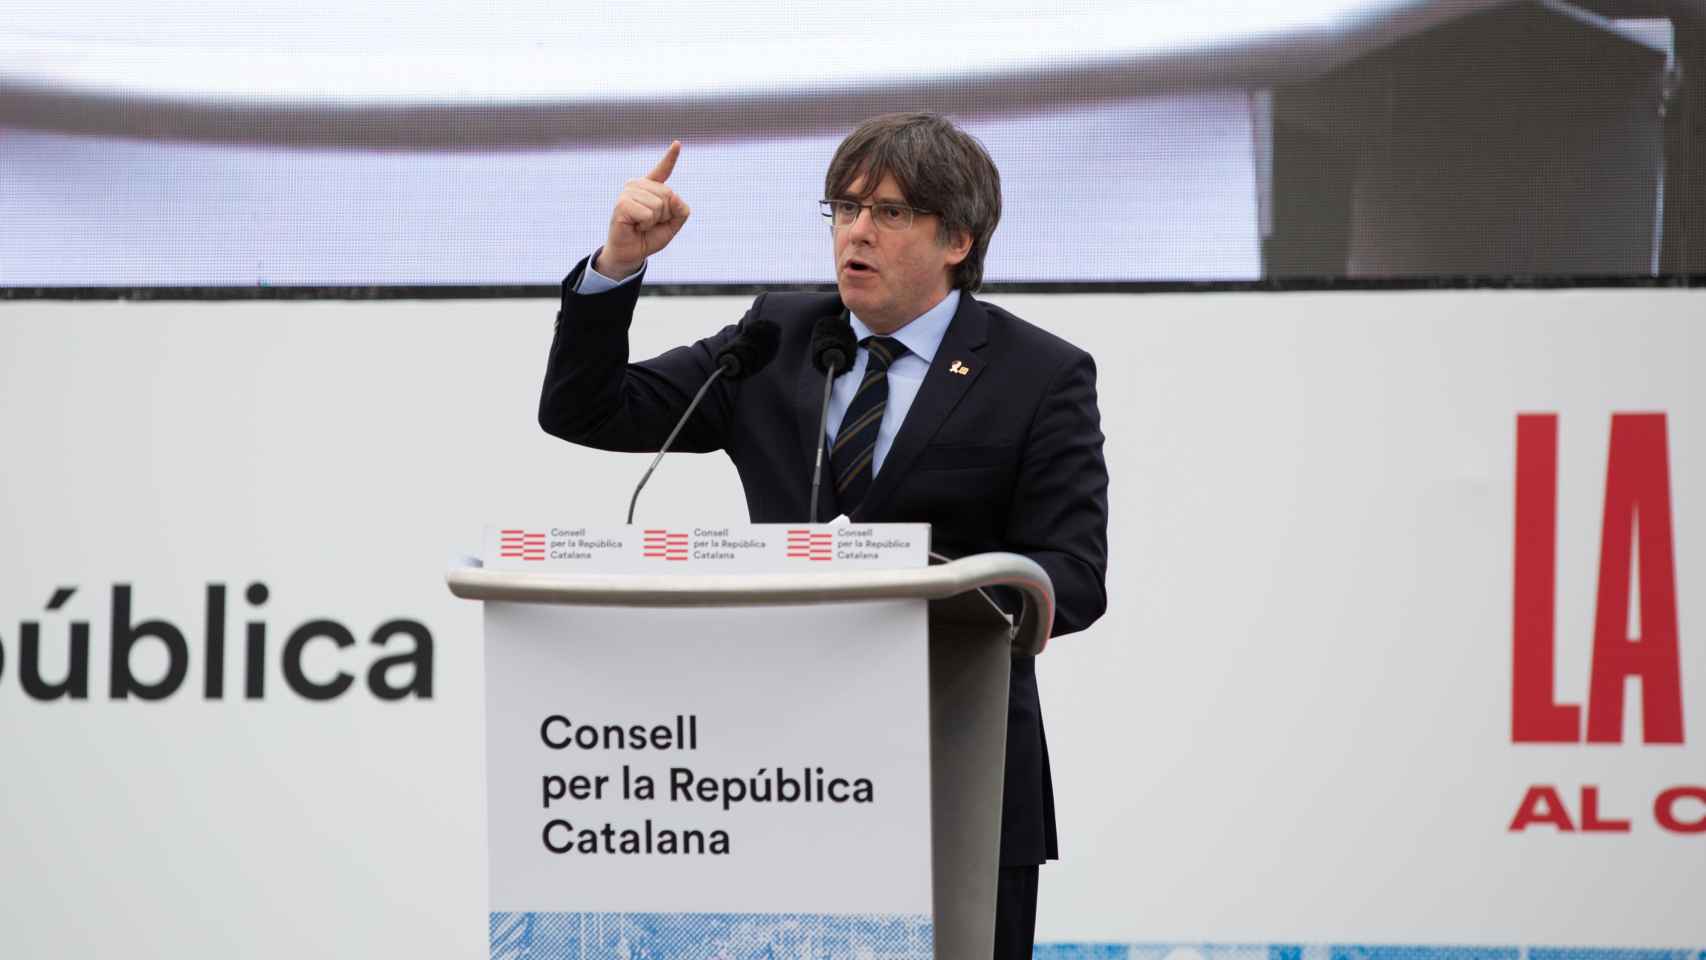 Carles Puigdemont, en el multitudinario mitin del Consell per la República en Perpiñán el 29 de febrero de 2020 / EUROPA PRESS